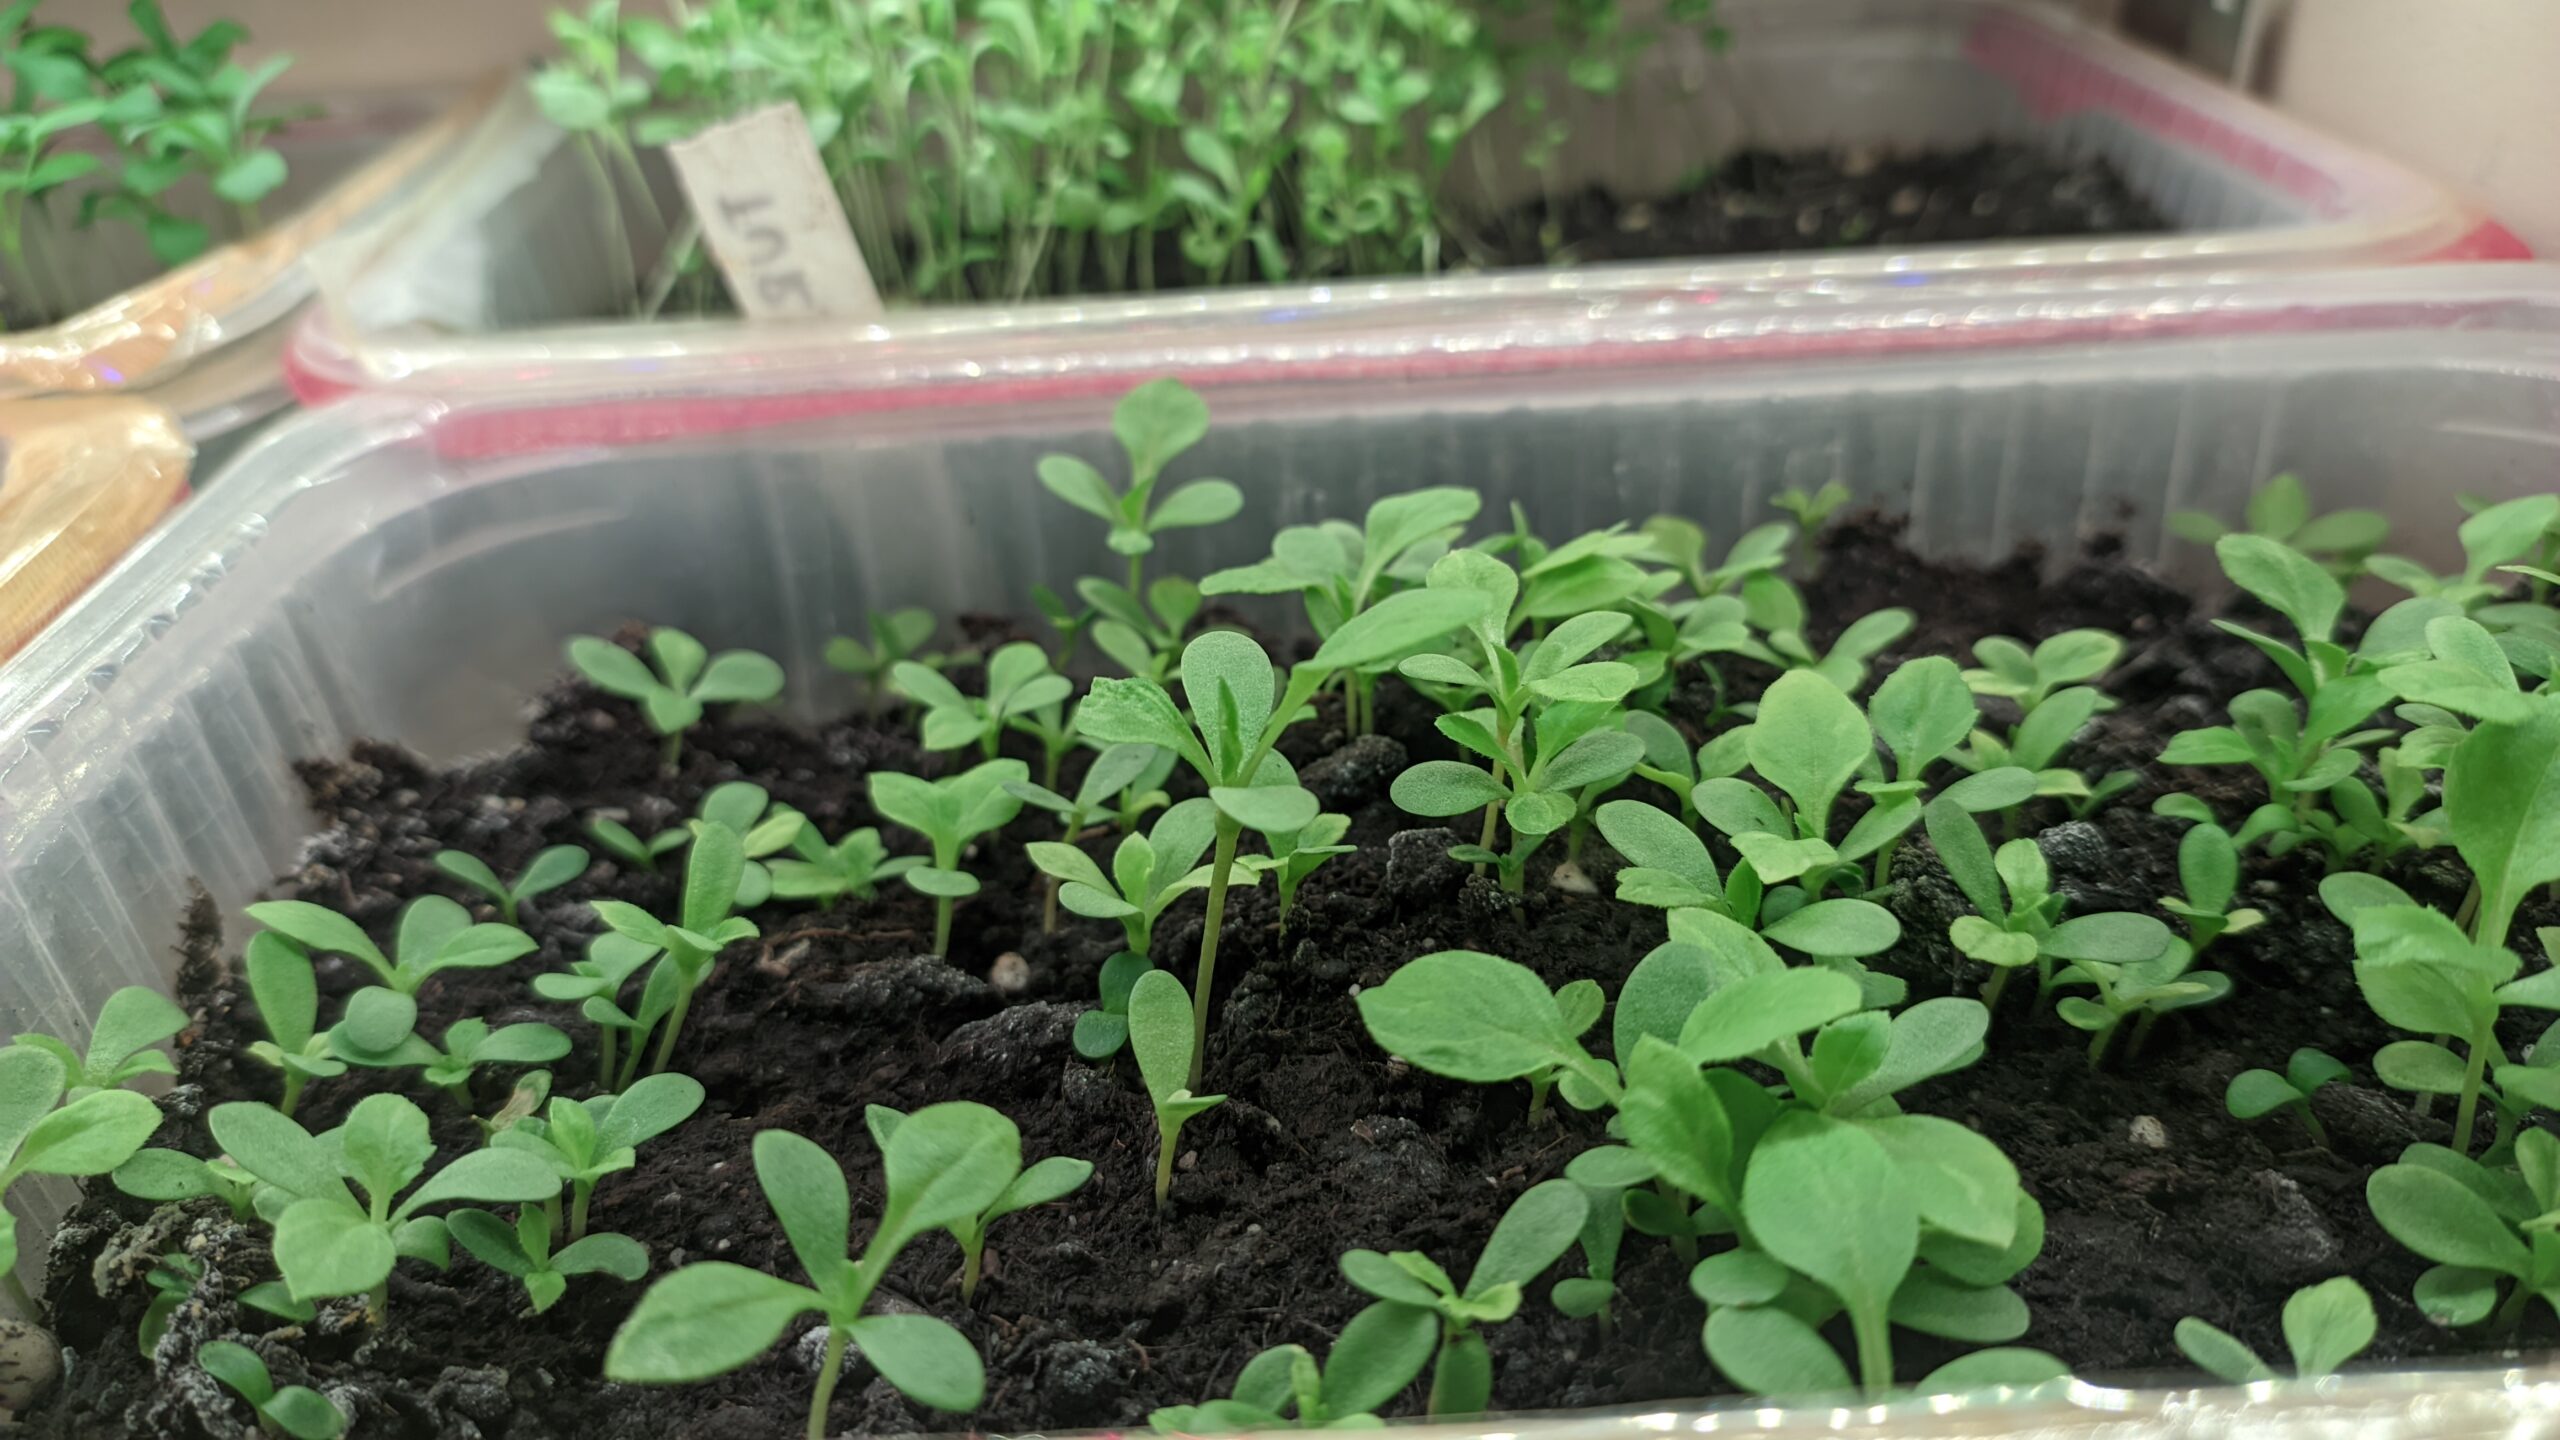 Weekly progress week 2: Snow and first seedlings